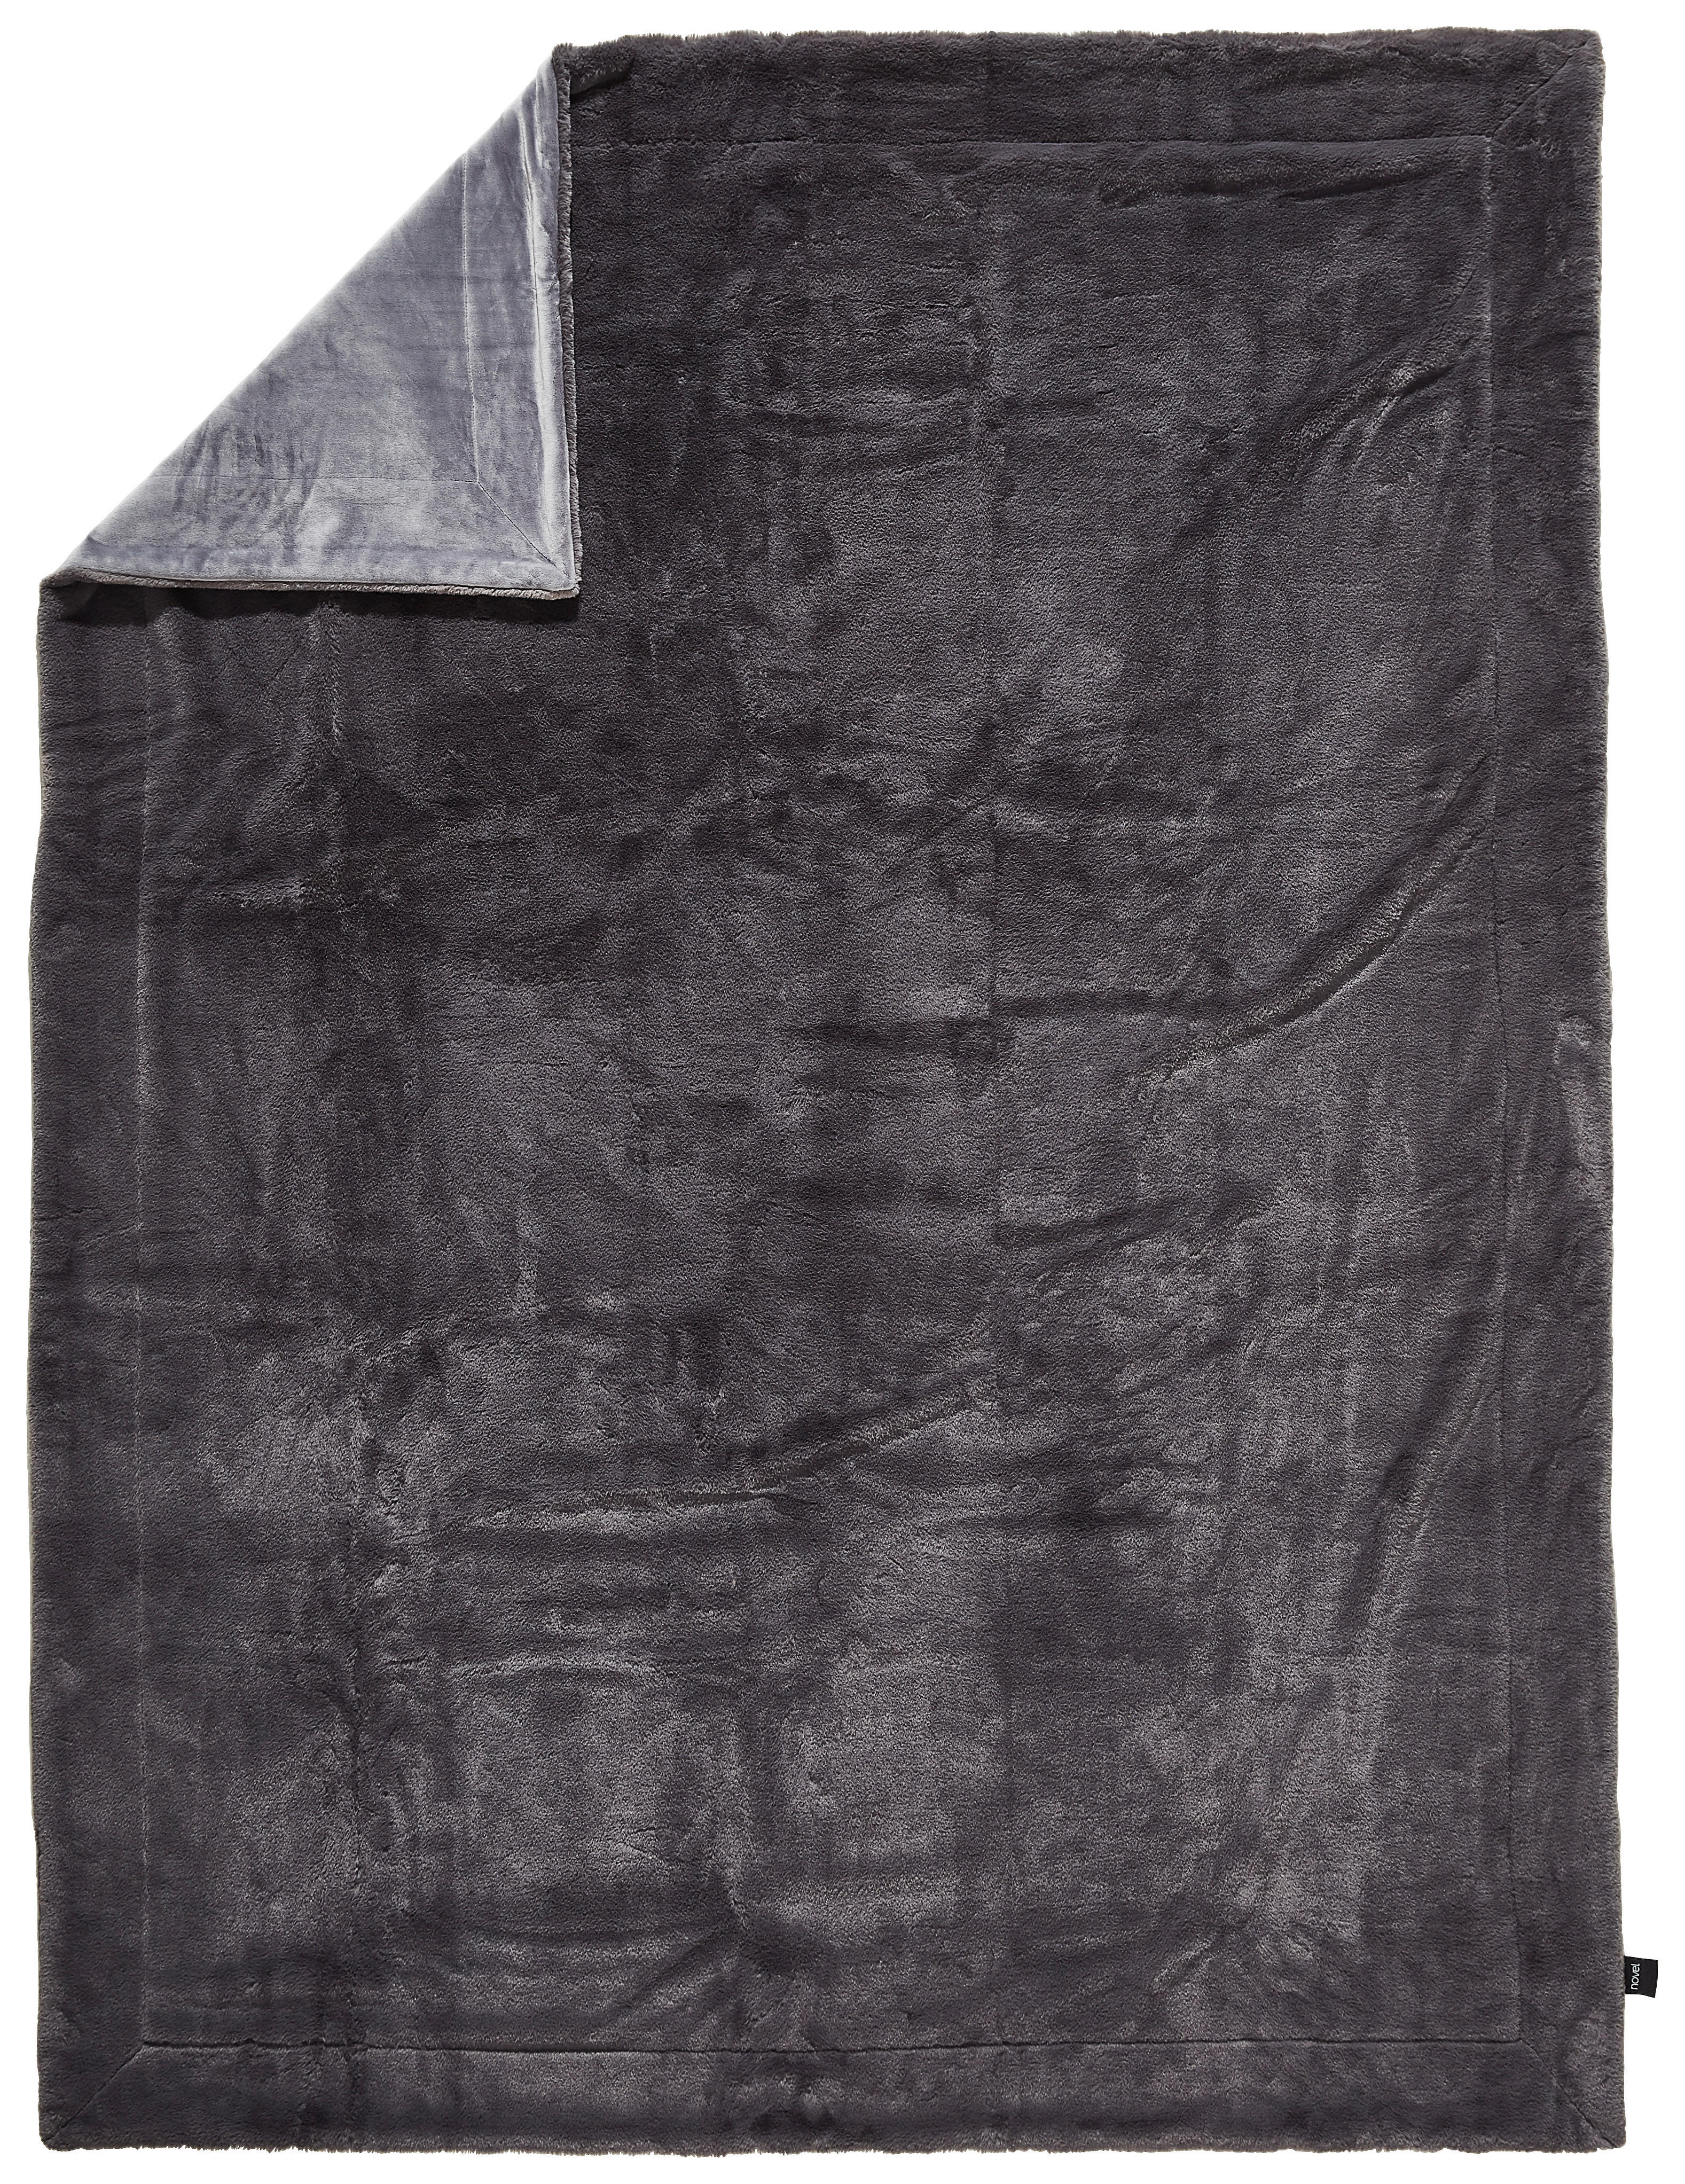 FELLDECKE Yukon 150/200 cm  - Anthrazit, Design, Textil (150/200cm) - Novel